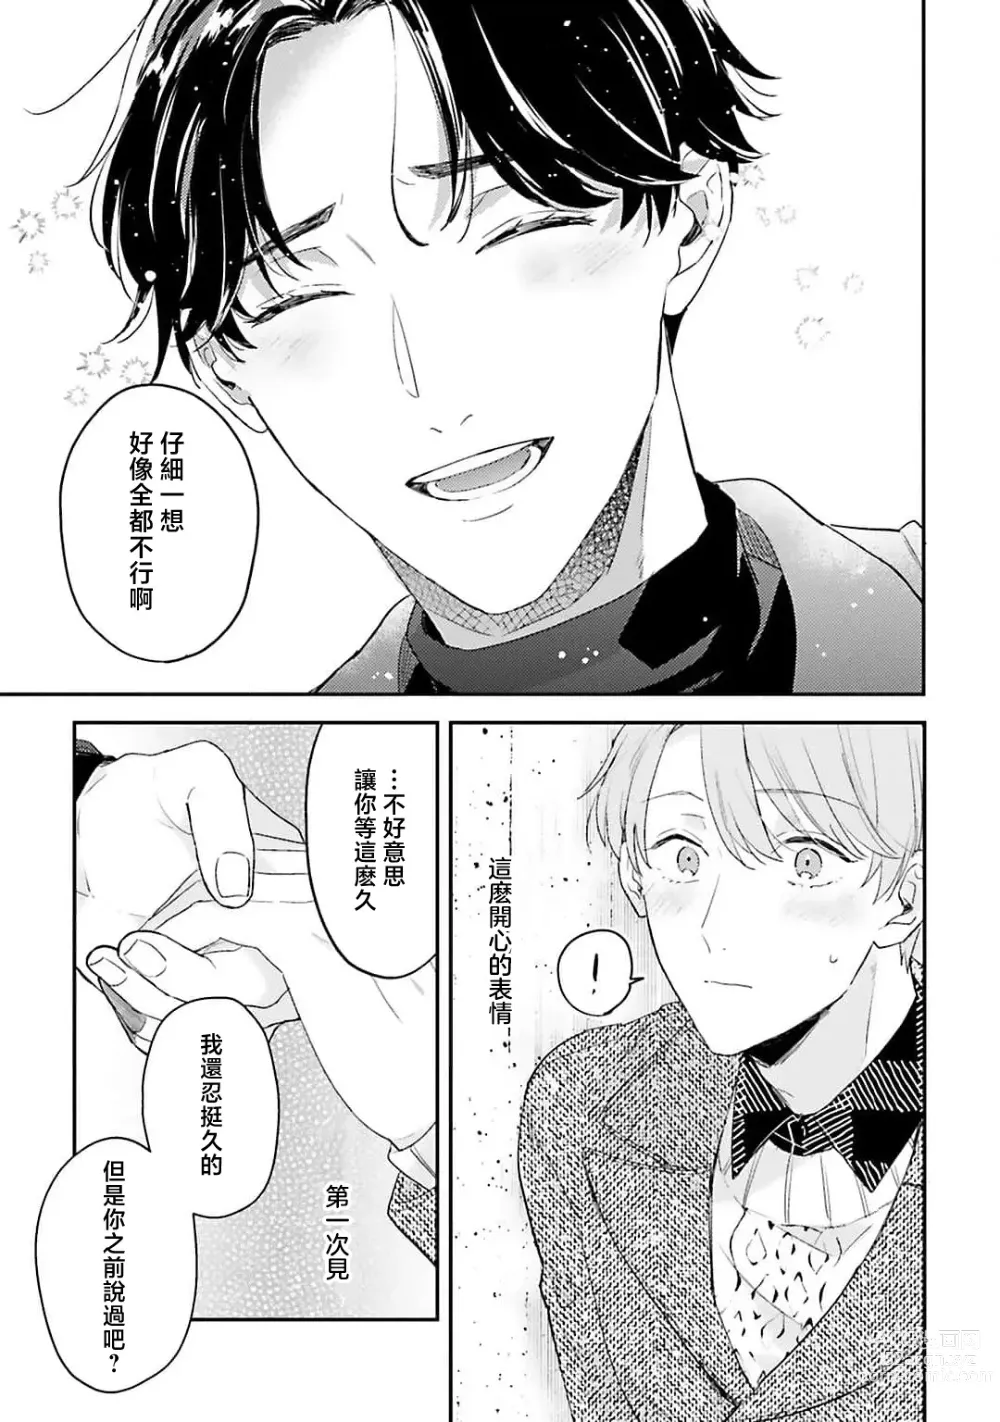 Page 149 of manga 绽放的恋爱皆为醉与甜1-5